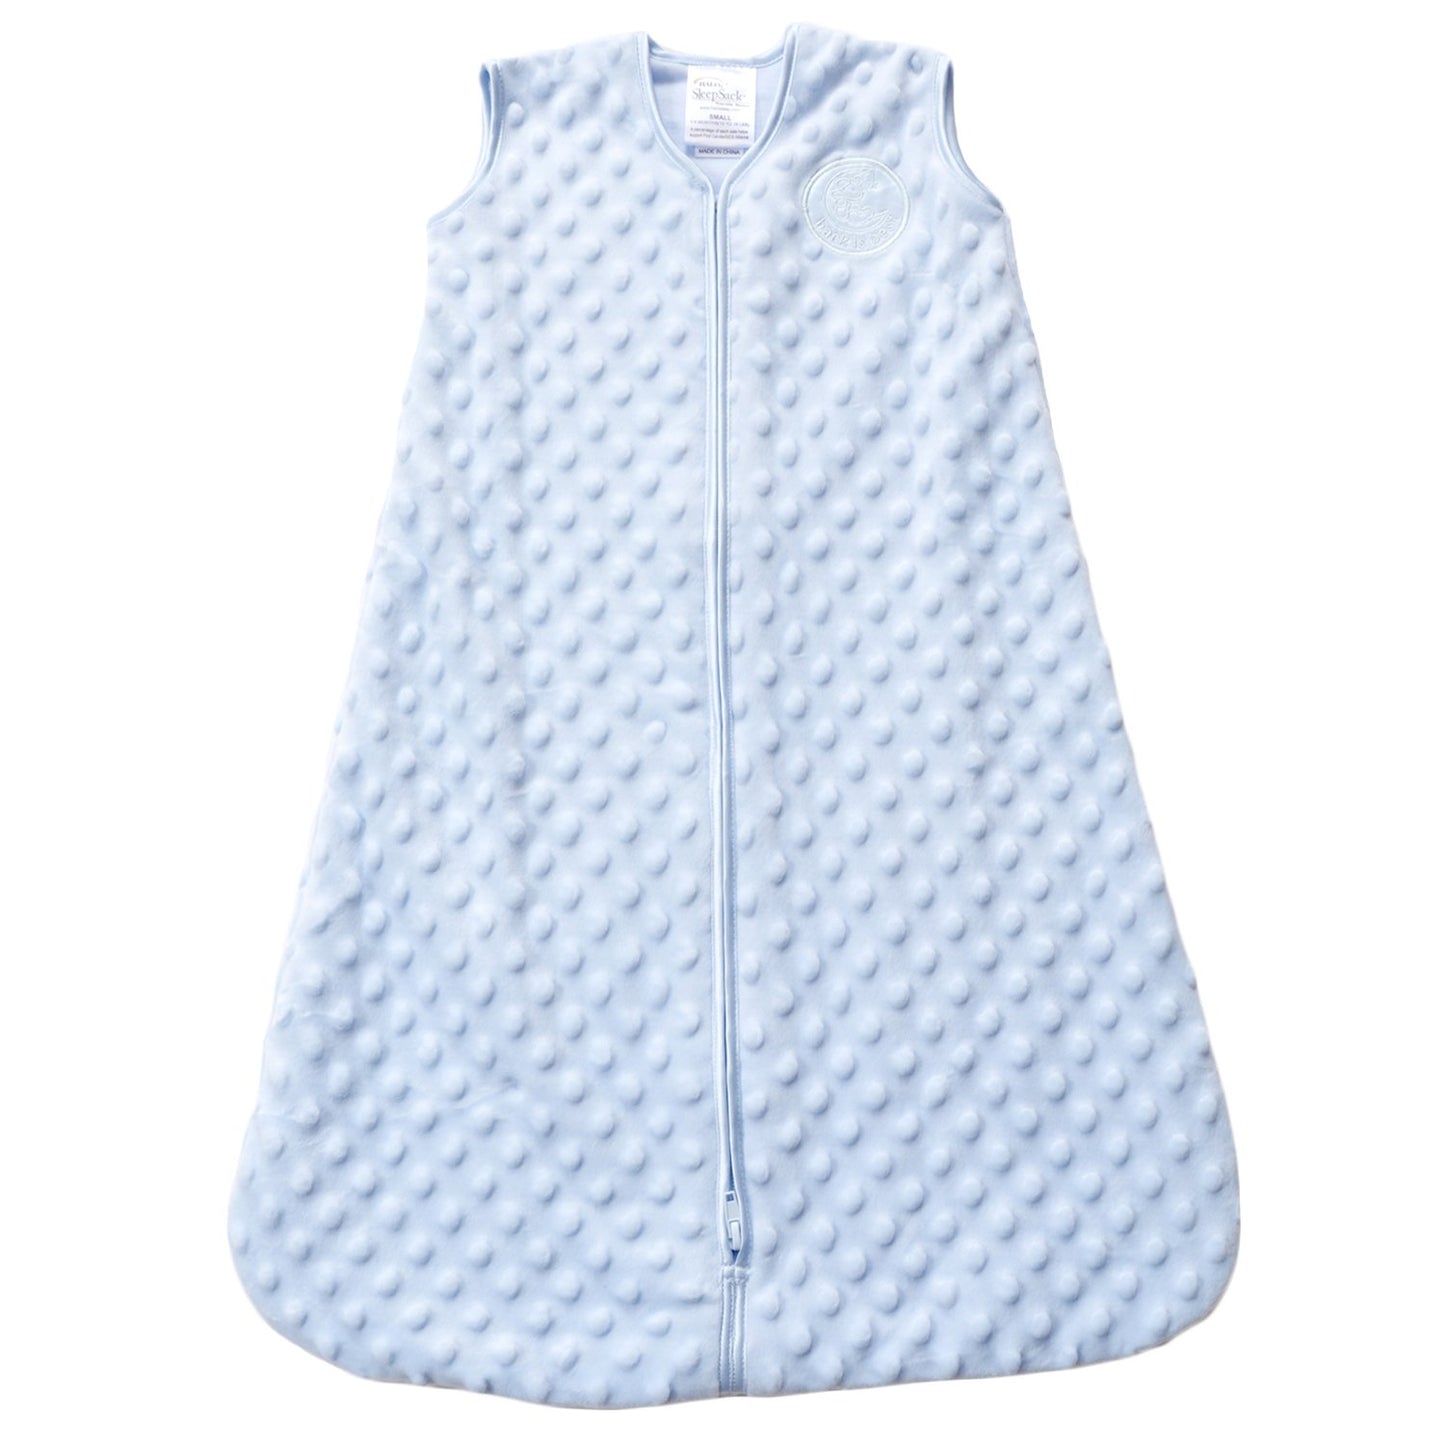 HALO Sleepsack Plush Dot Velboa Wearable Blanket, TOG 1.5, Cream, Medium